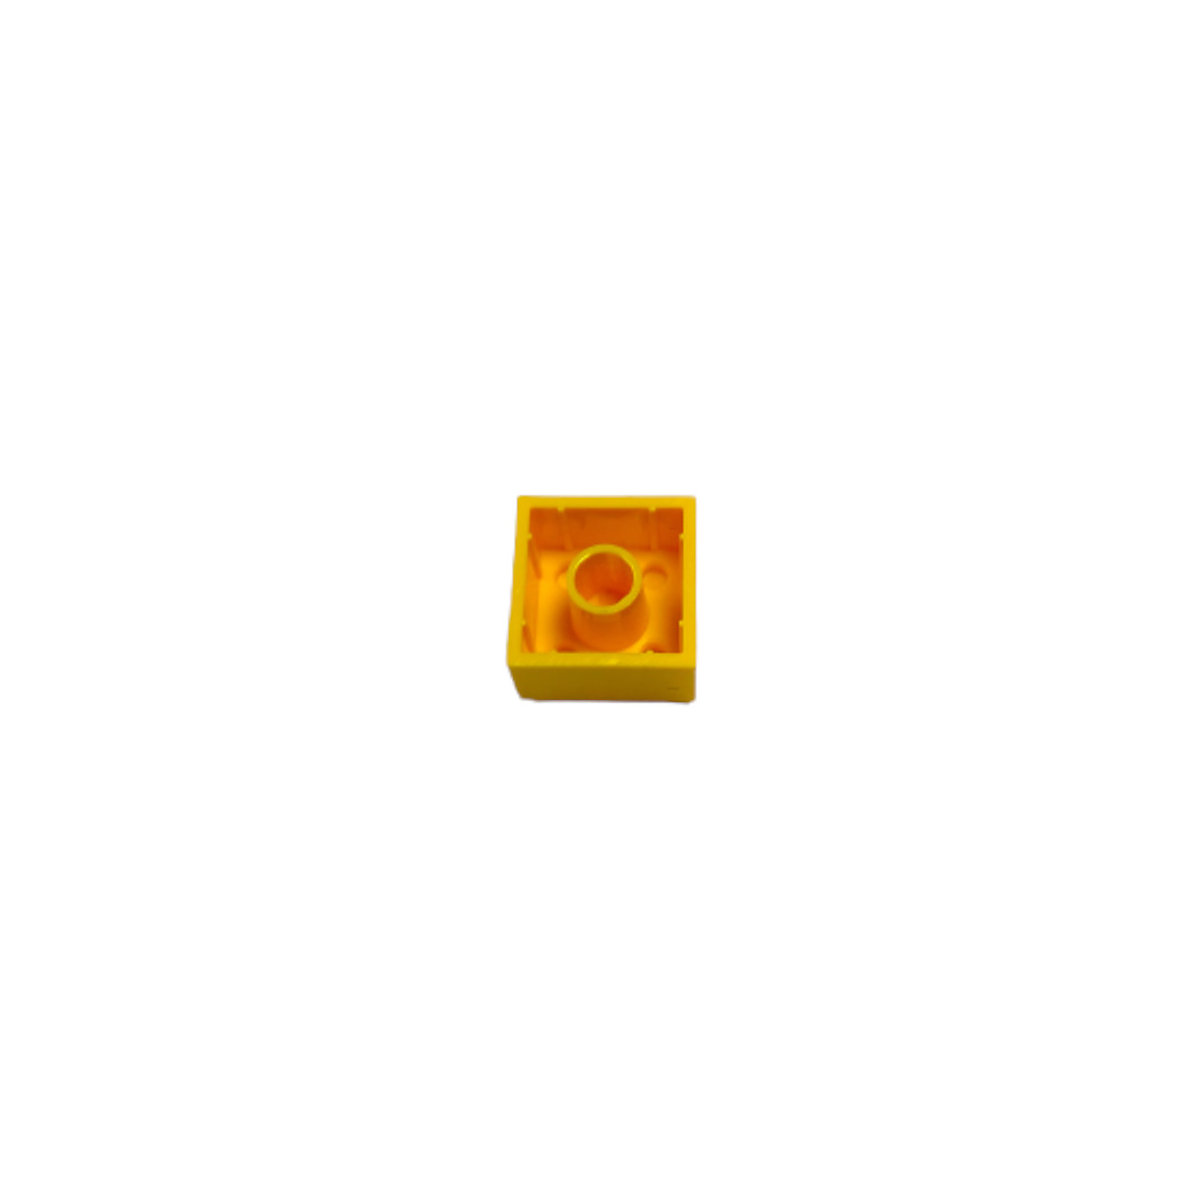 LEGO® 2x2 Steine Hochsteine Gelb Classic Basic City Yellow Bricks 3003 NEU! Menge 500x